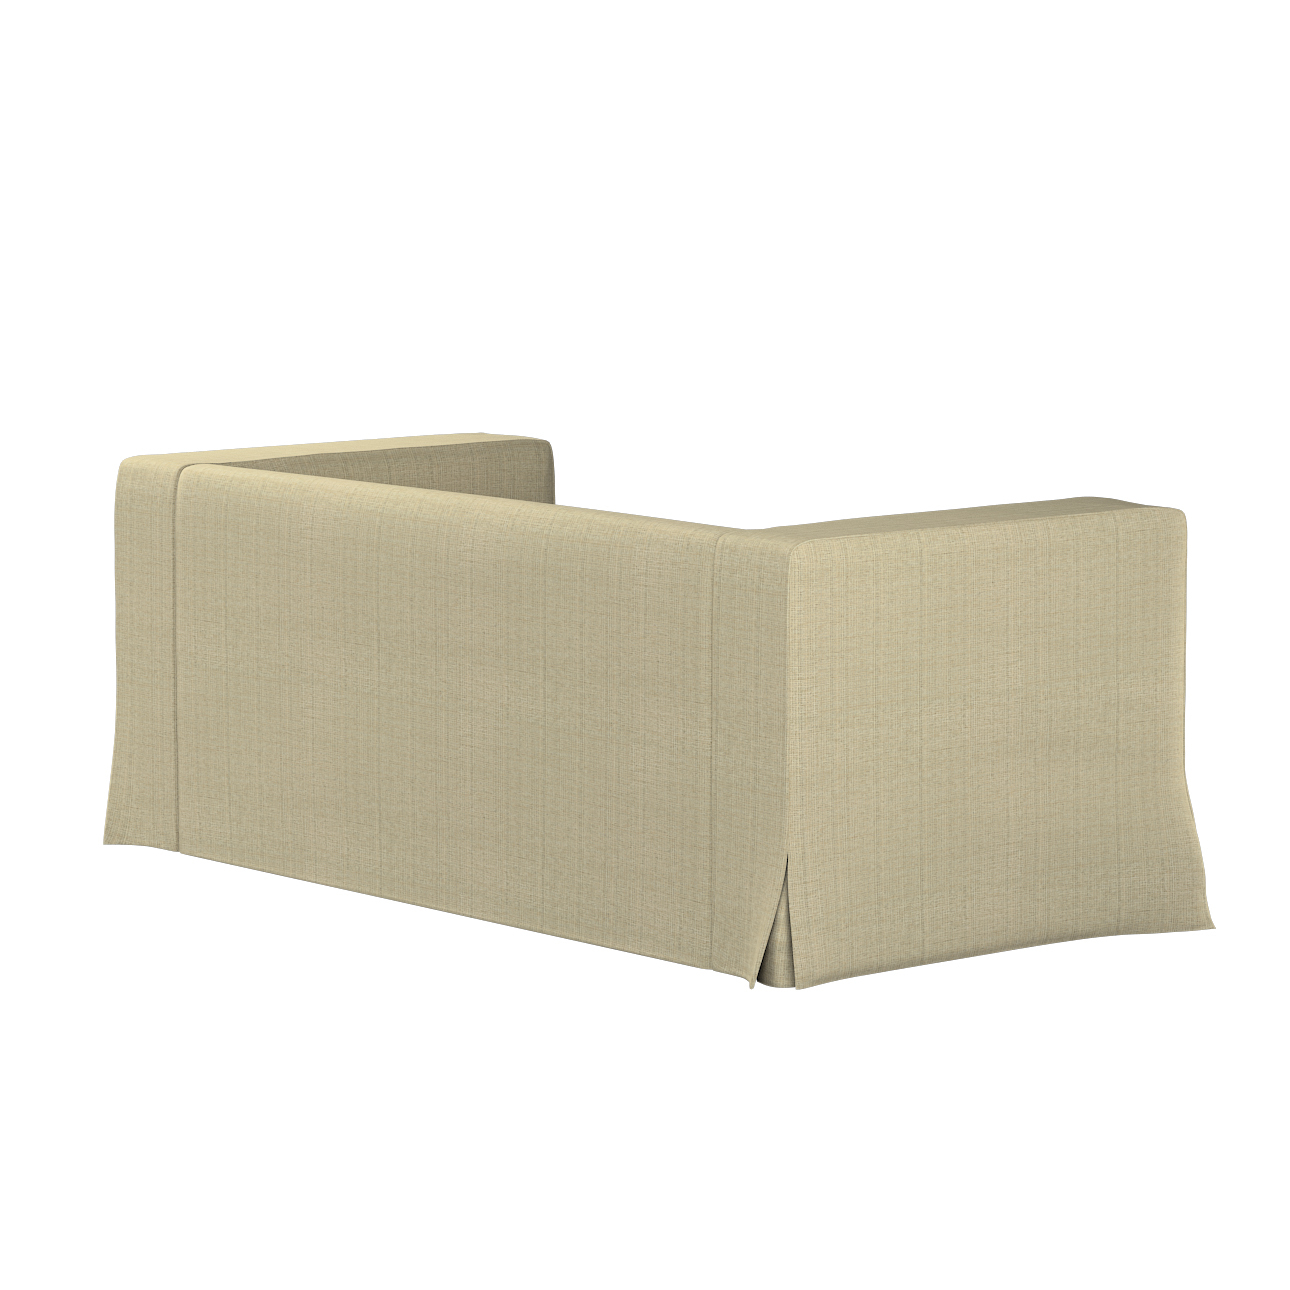 Bezug für Klippan 2-Sitzer Sofa, lang mit Kellerfalte, beige-creme, Klippan günstig online kaufen